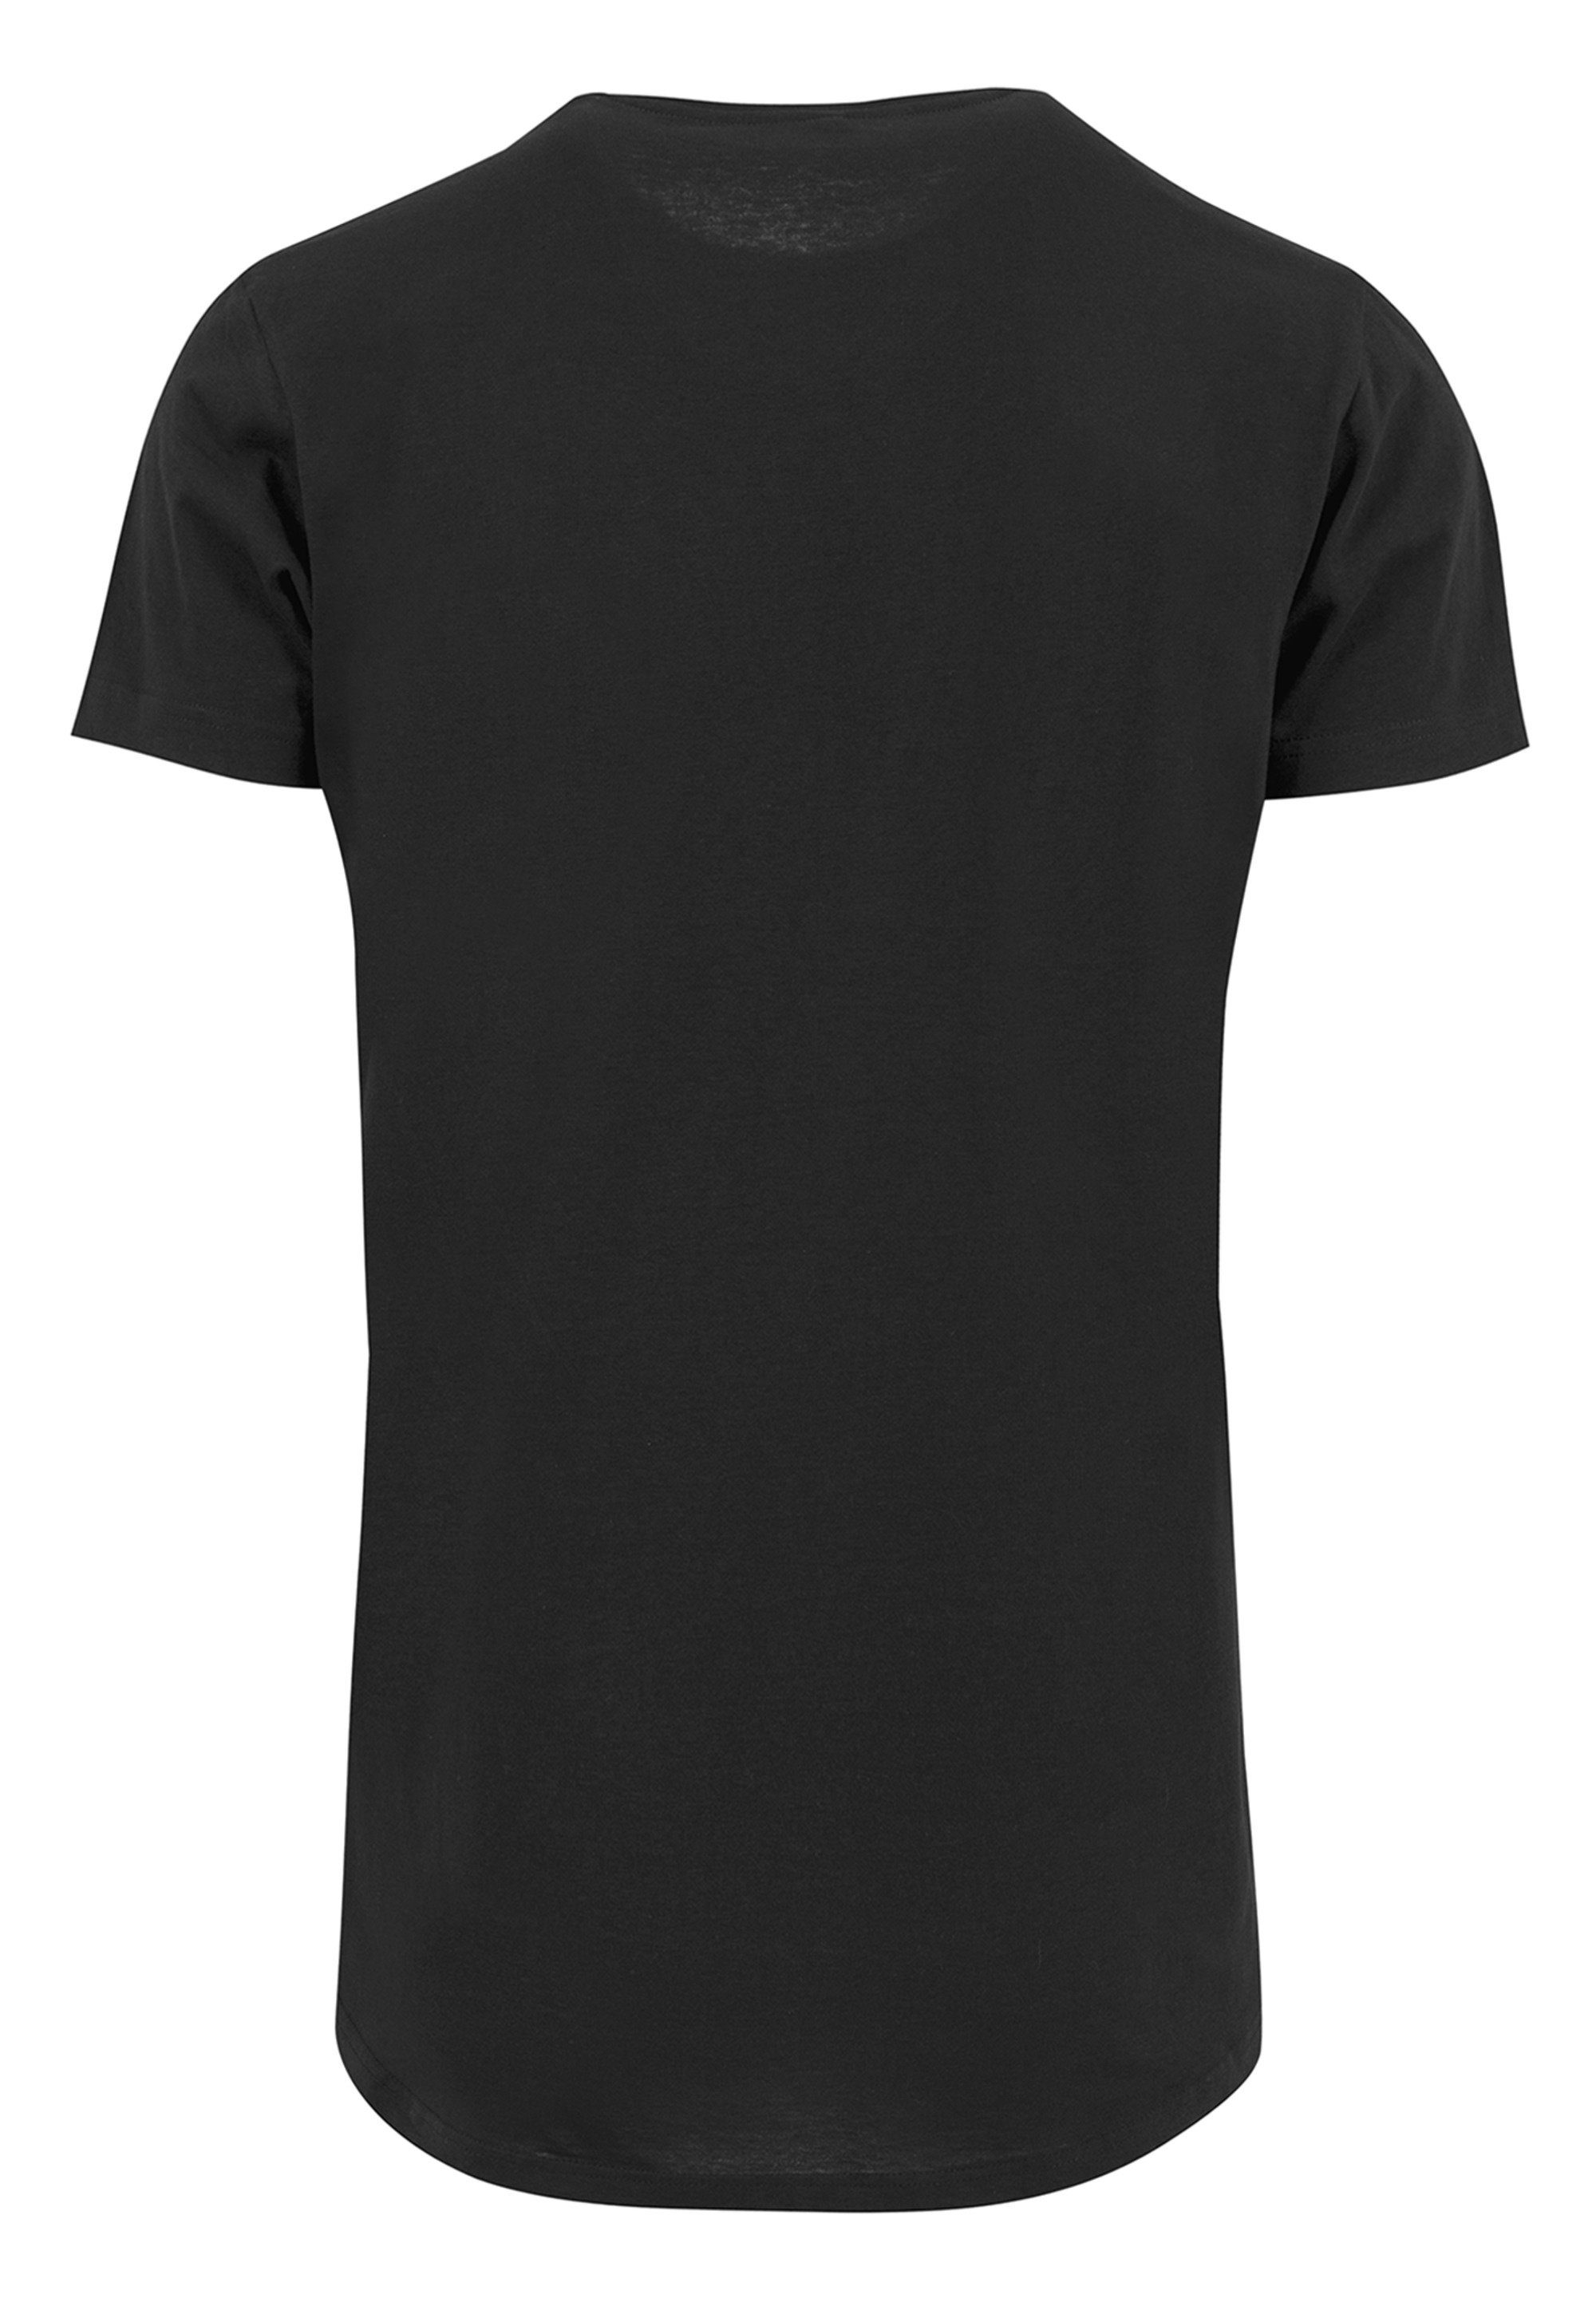 F4NT4STIC T-Shirt PLUS SIZE Queen Classic Crest Print, Sehr weicher  Baumwollstoff mit hohem Tragekomfort